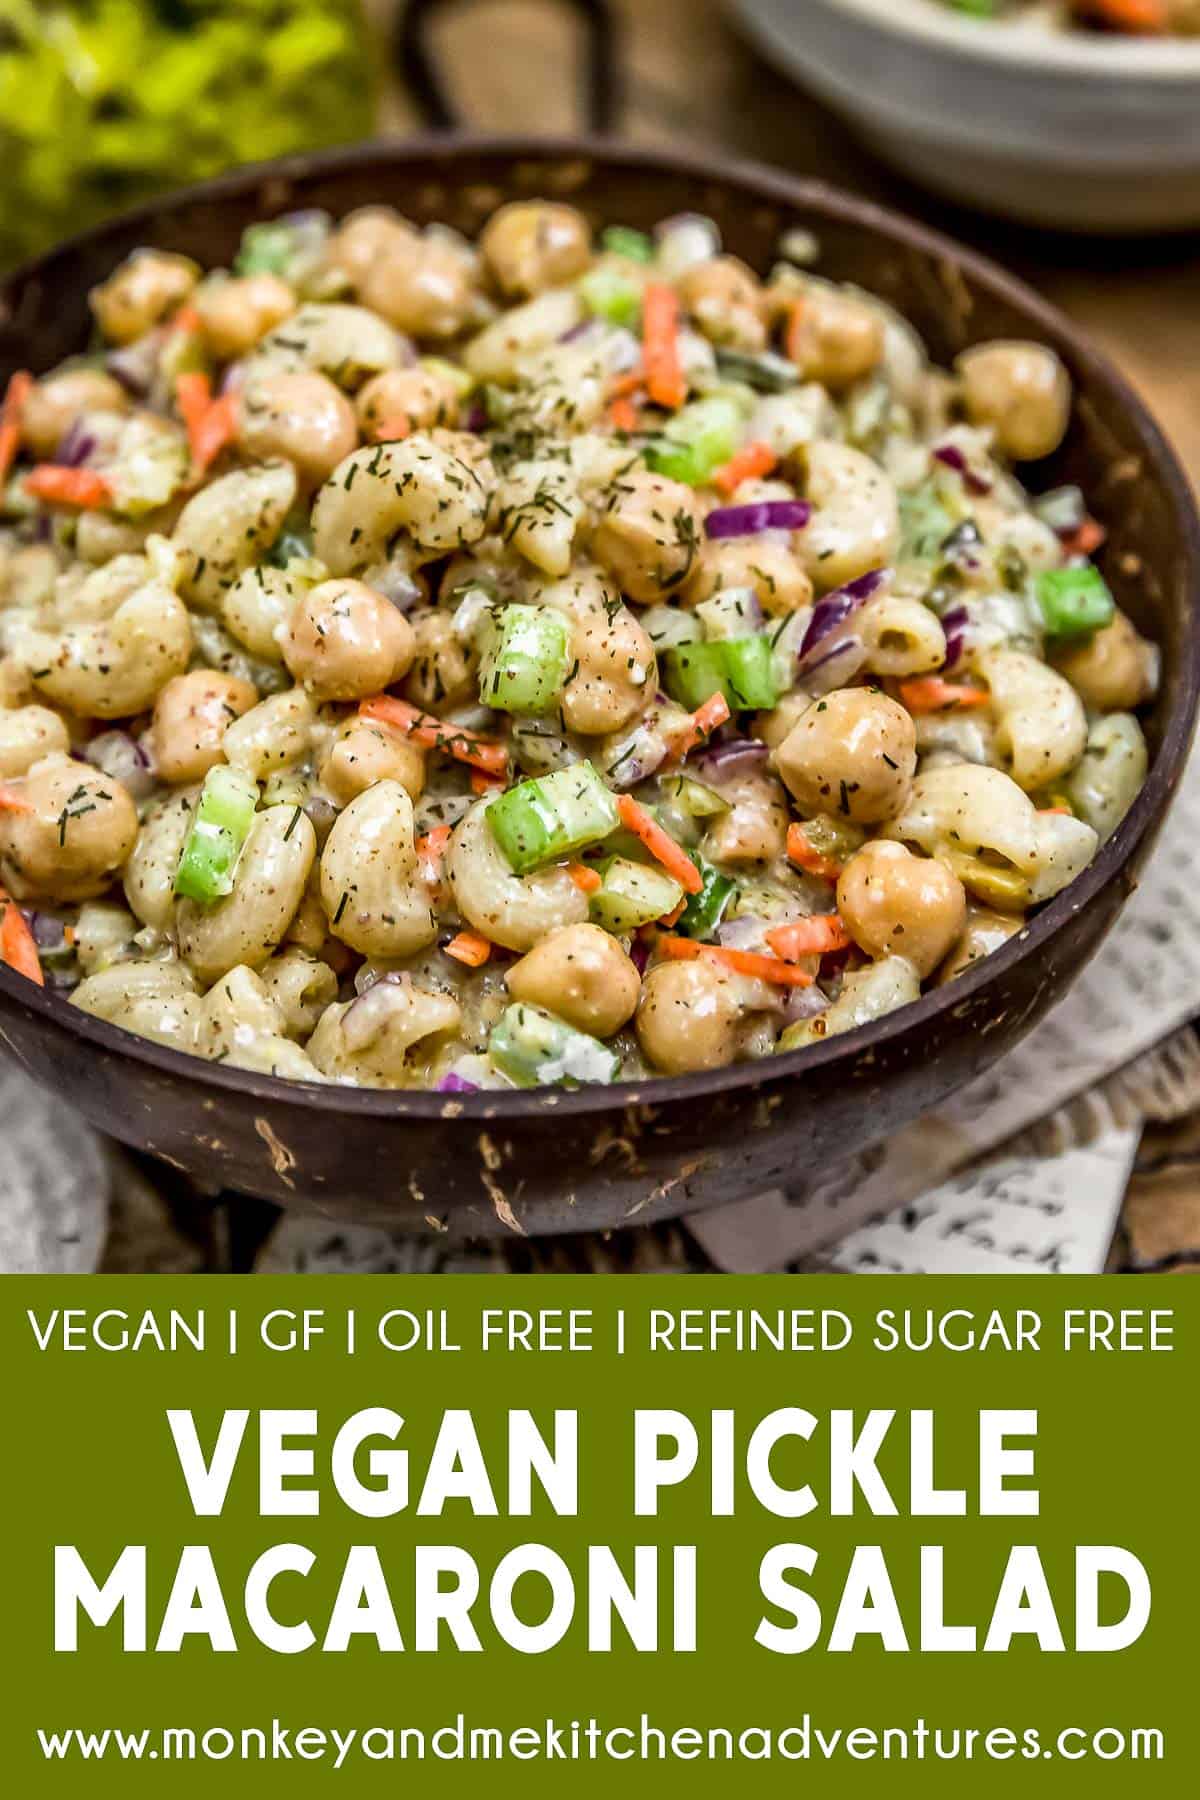 Vegan Pickle Macaroni Salad with text description